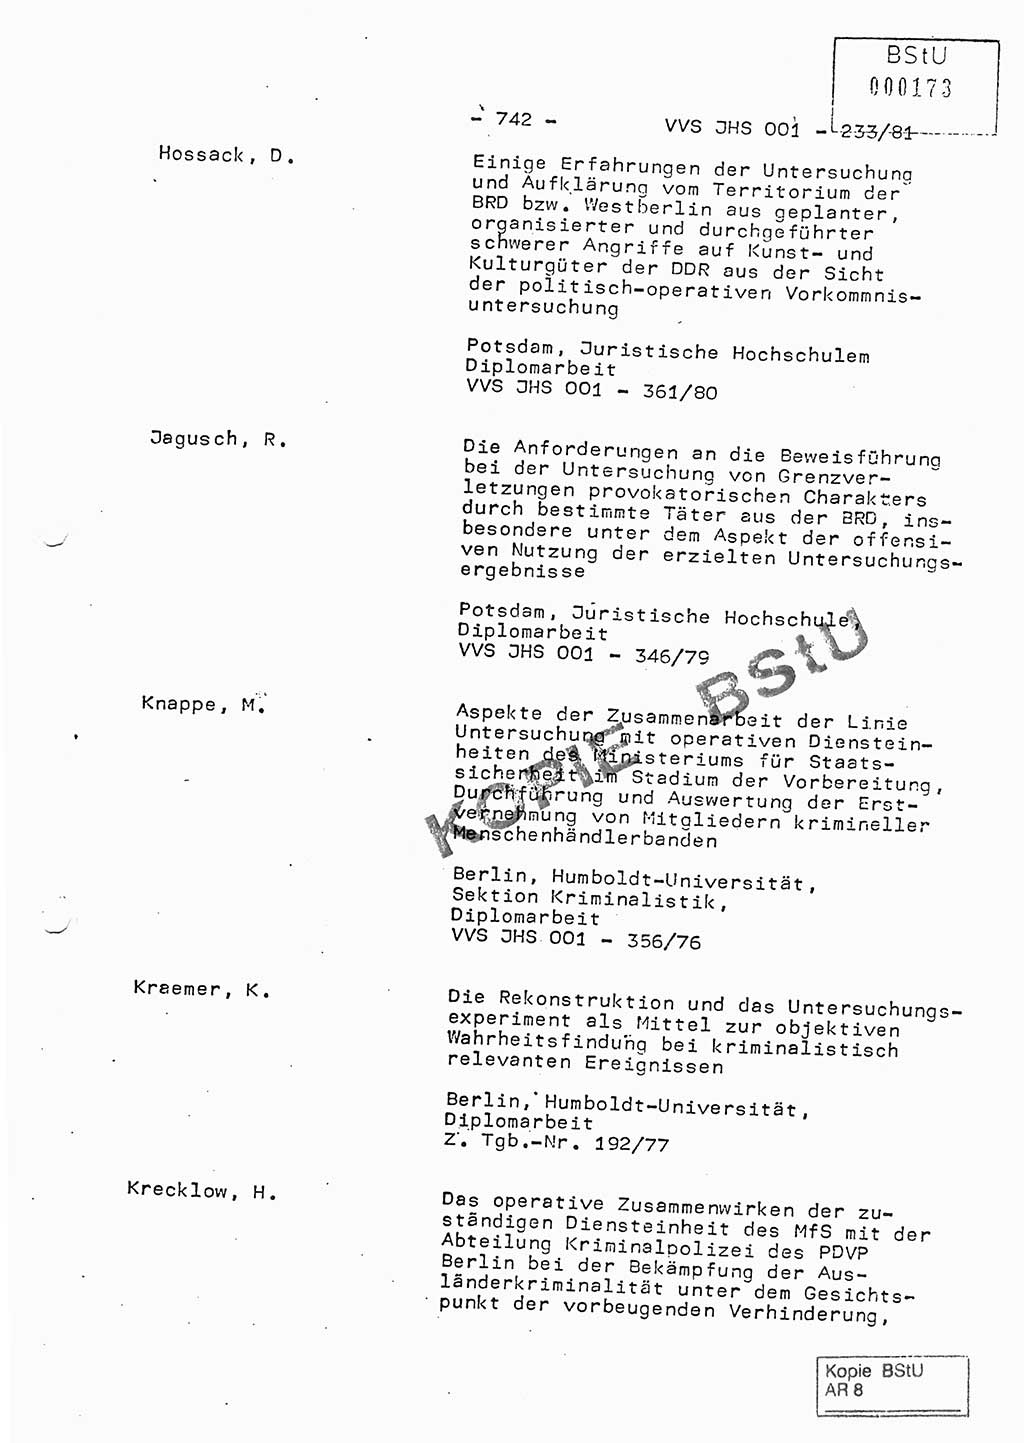 Dissertation Oberstleutnant Horst Zank (JHS), Oberstleutnant Dr. Karl-Heinz Knoblauch (JHS), Oberstleutnant Gustav-Adolf Kowalewski (HA Ⅸ), Oberstleutnant Wolfgang Plötner (HA Ⅸ), Ministerium für Staatssicherheit (MfS) [Deutsche Demokratische Republik (DDR)], Juristische Hochschule (JHS), Vertrauliche Verschlußsache (VVS) o001-233/81, Potsdam 1981, Blatt 742 (Diss. MfS DDR JHS VVS o001-233/81 1981, Bl. 742)